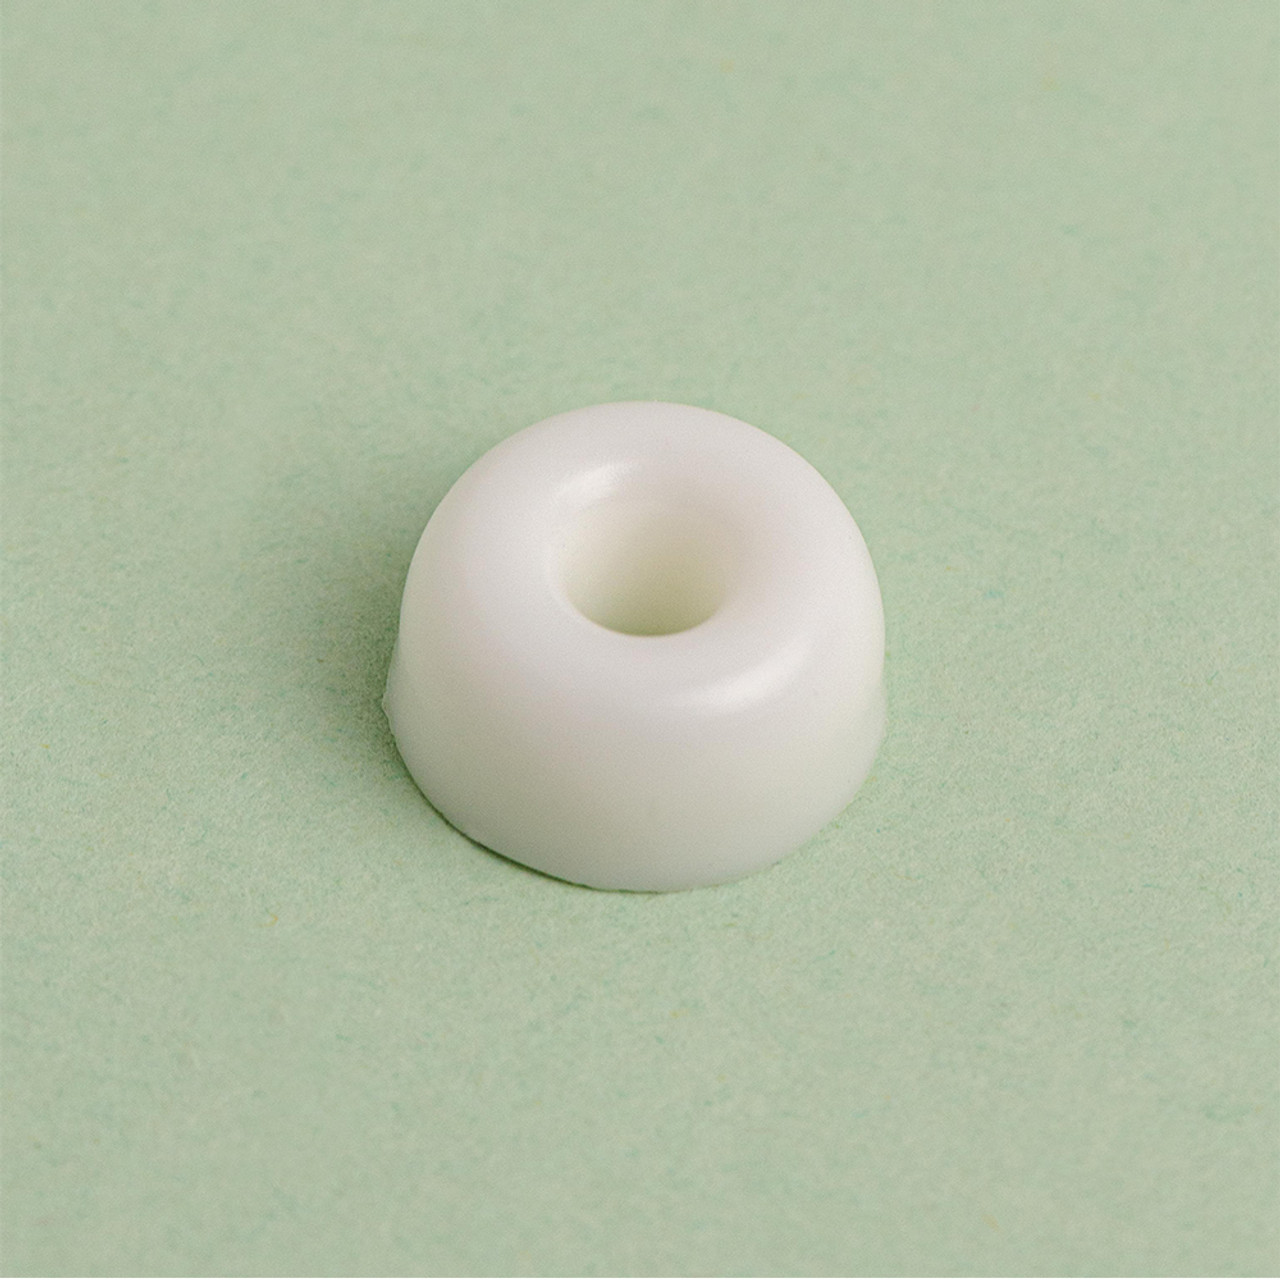 Silicone Mold - Mini Doughnuts